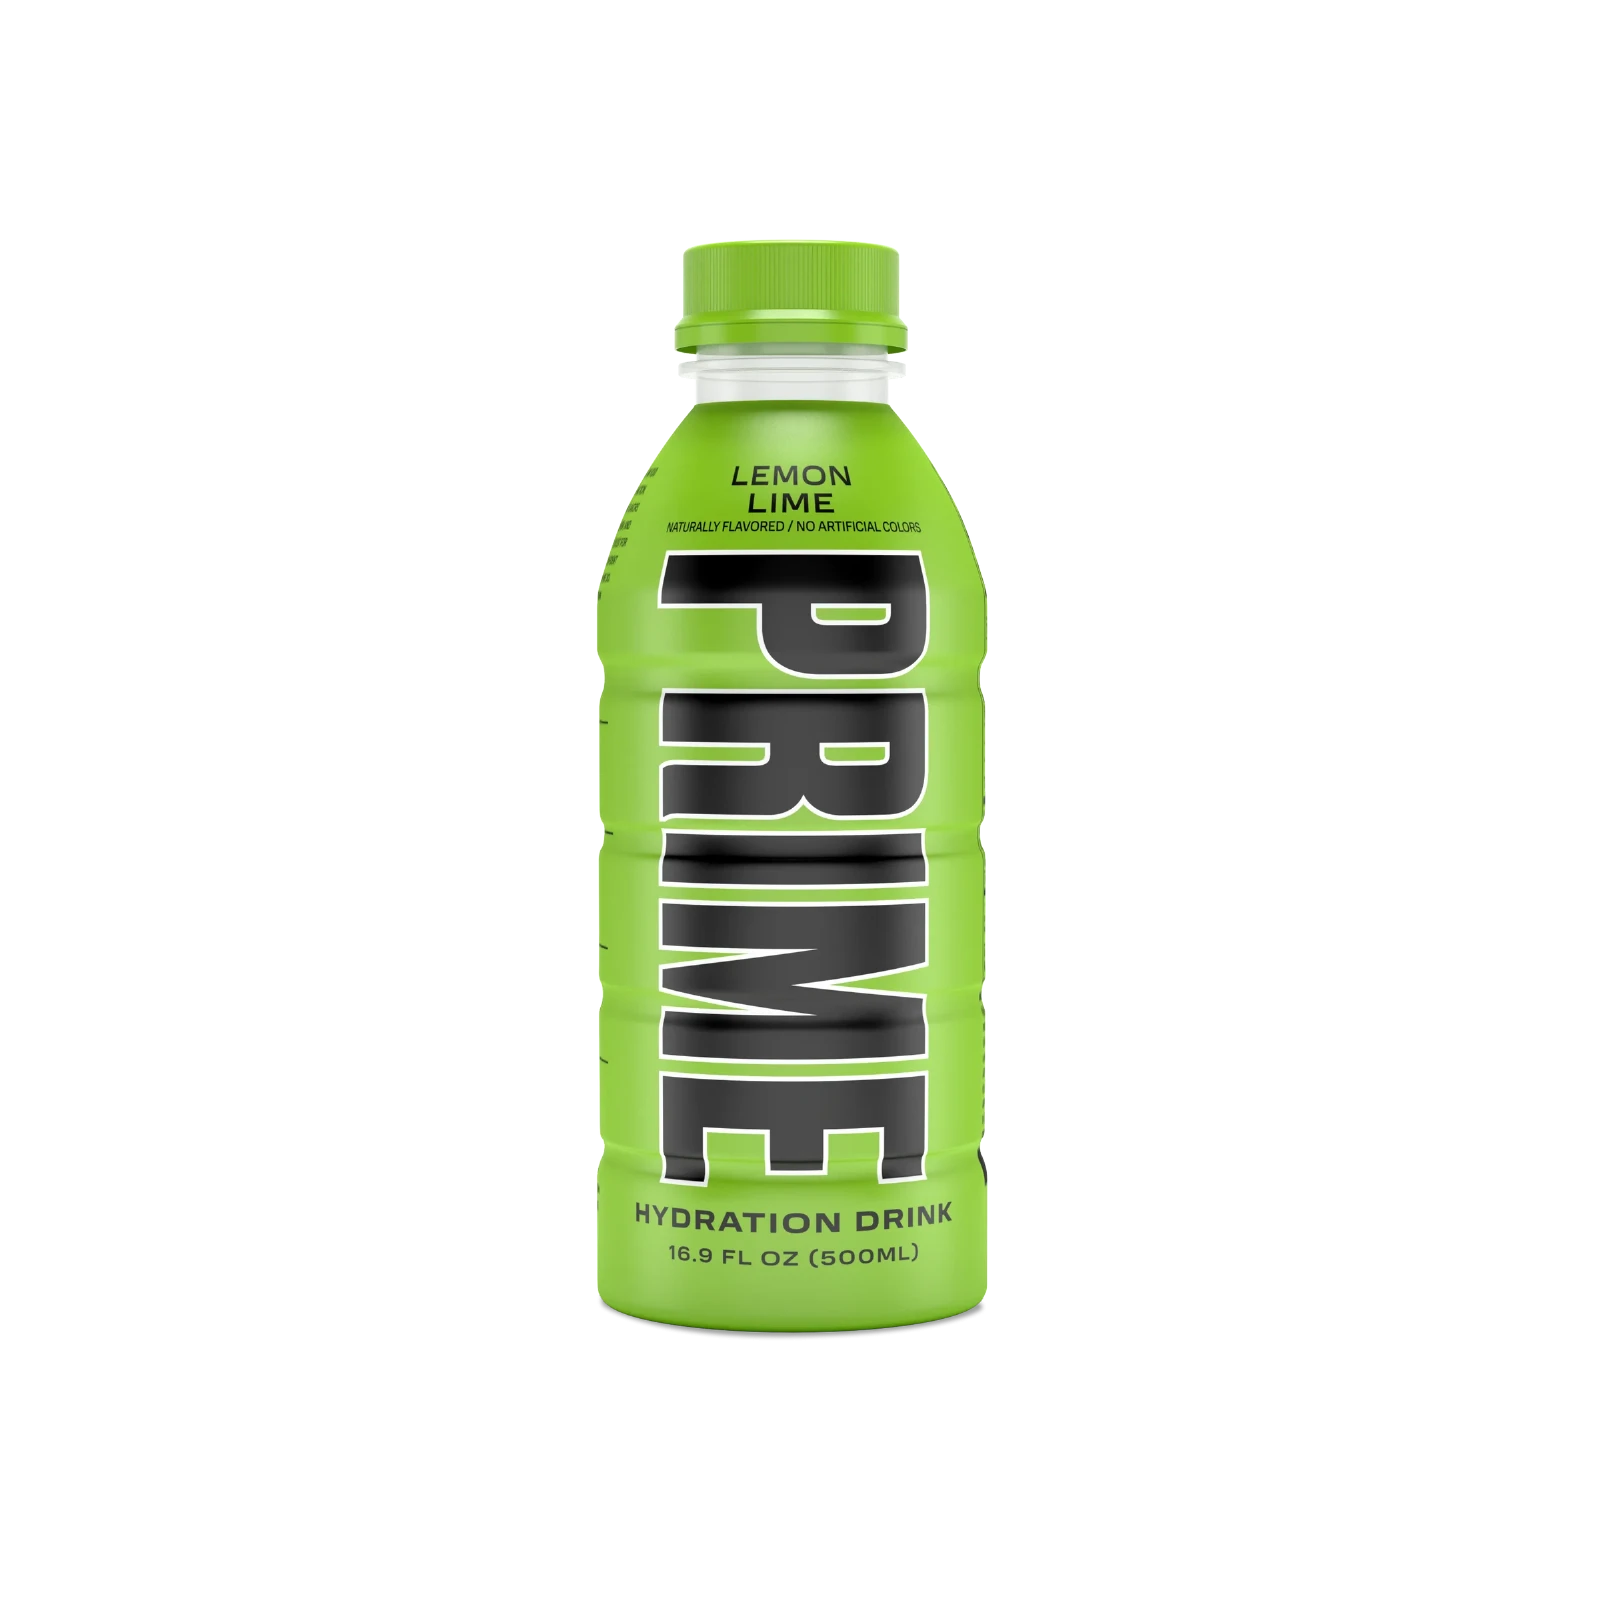 Prime Hydration - Sportdrink - Lemon Lime - 500 ml - Energy Drink von Logan Paul und KSI - Aus den USA 2